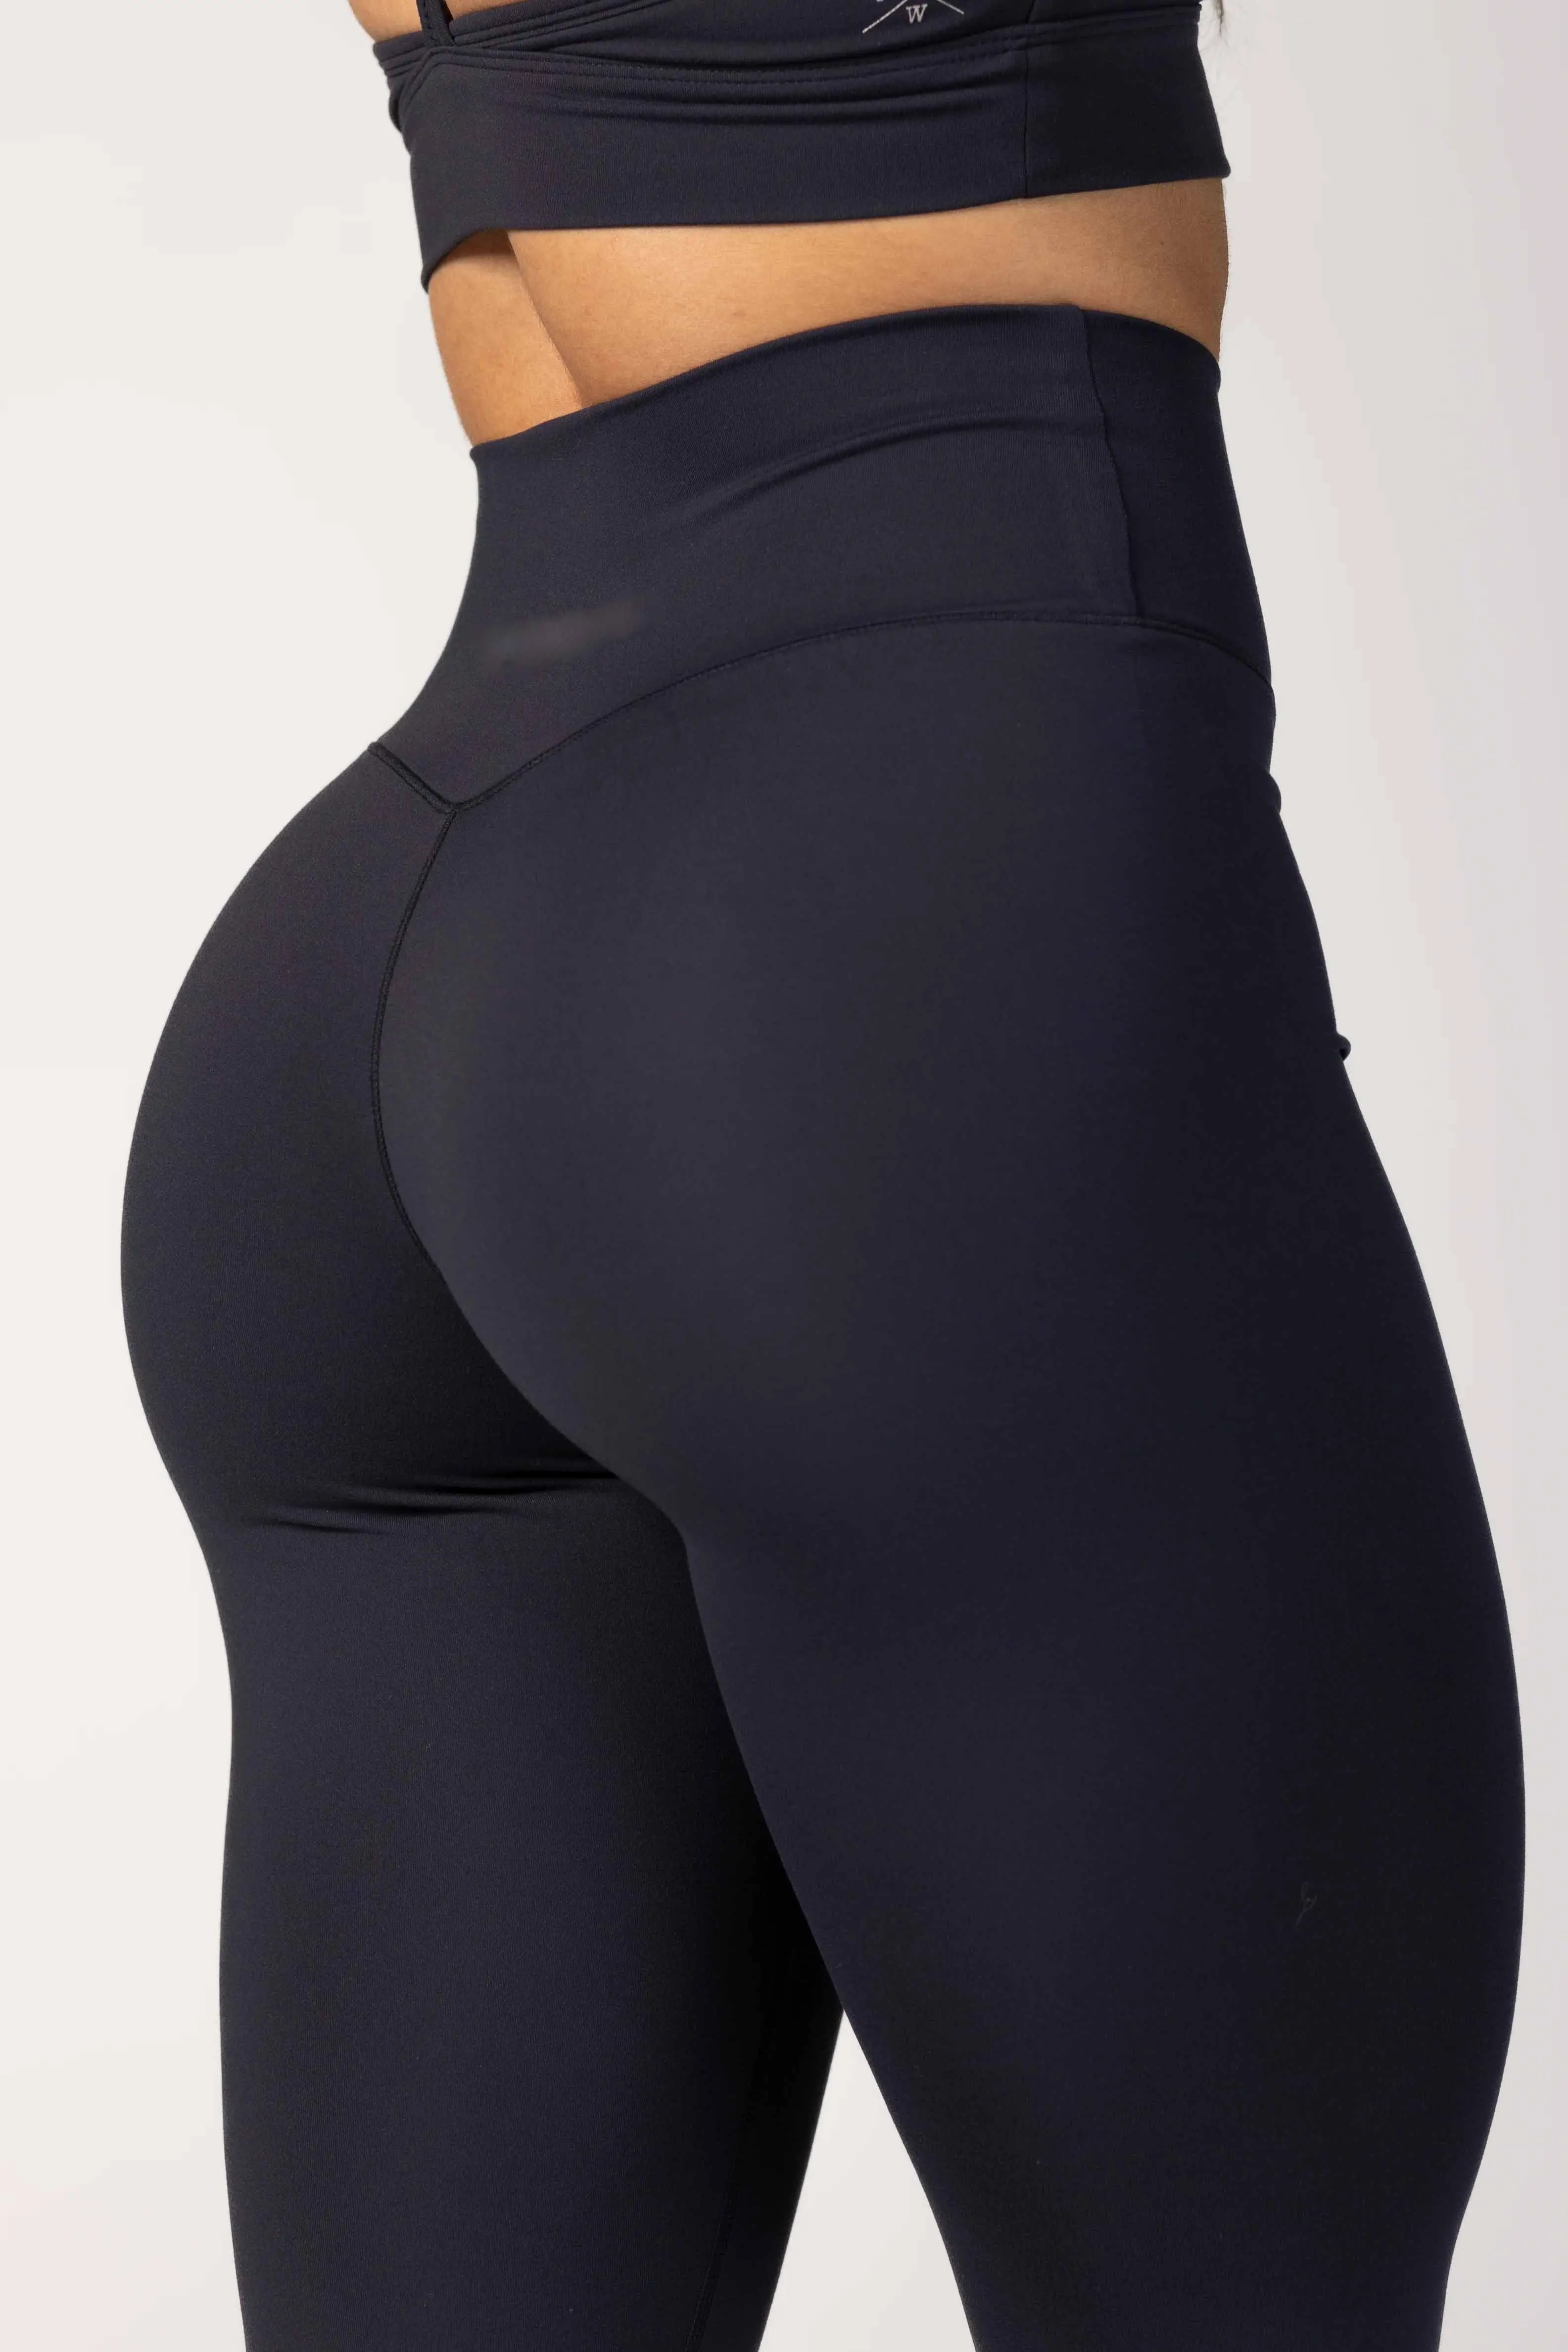 Leggings taille haute respirant et à séchage rapide pour femmes leggings de yoga amincissants leggings évasés pour femmes vente en gros